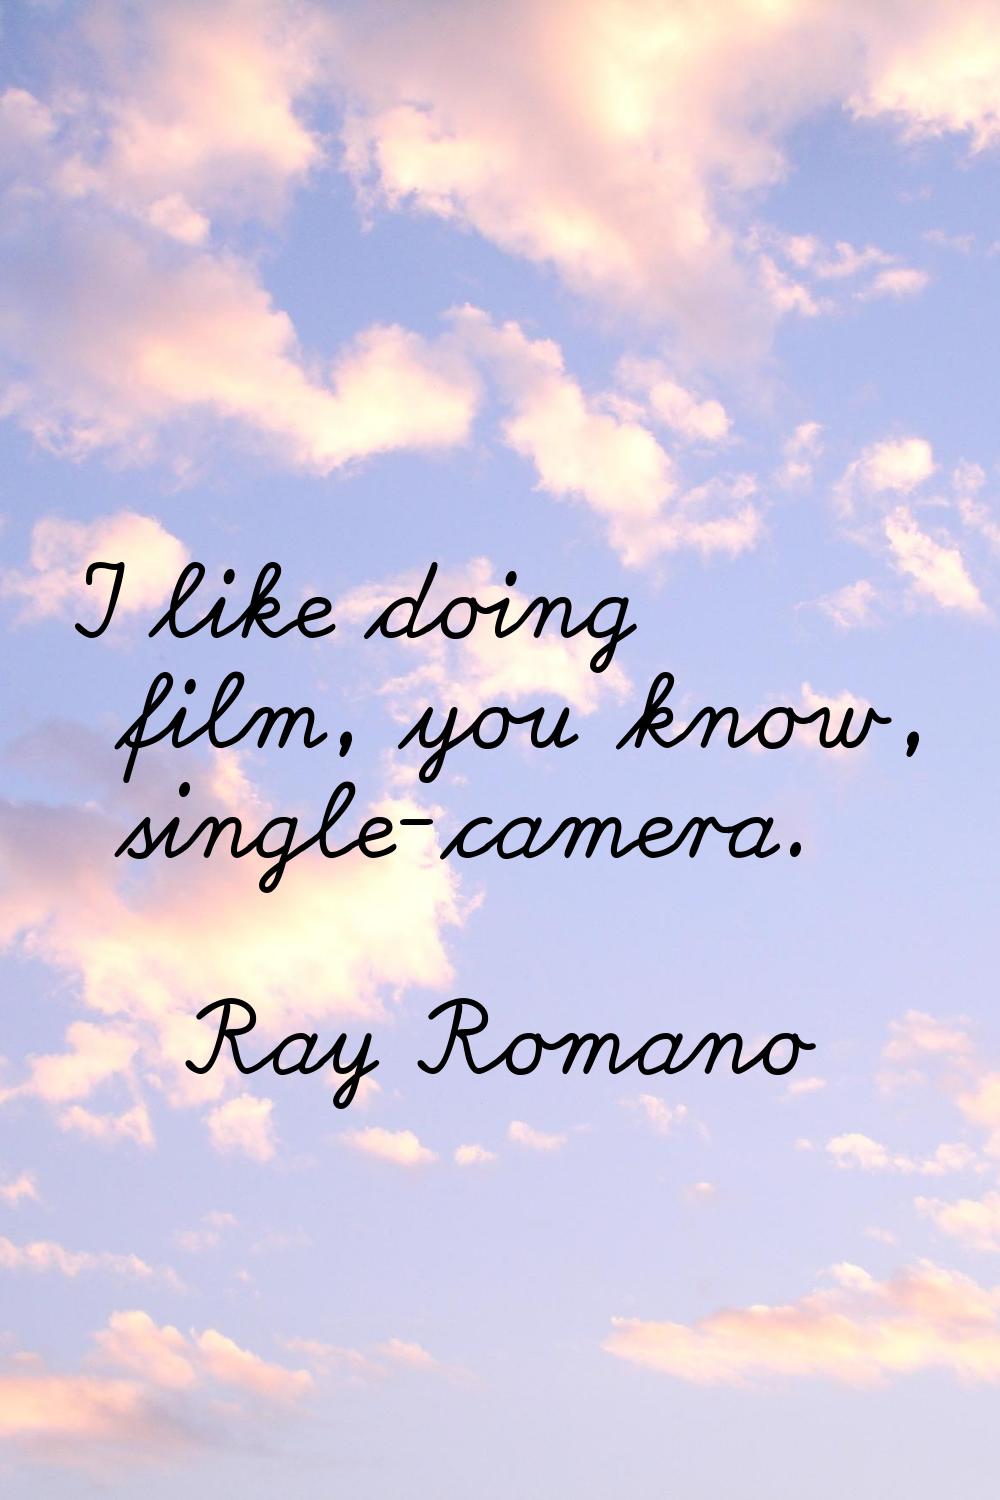 I like doing film, you know, single-camera.